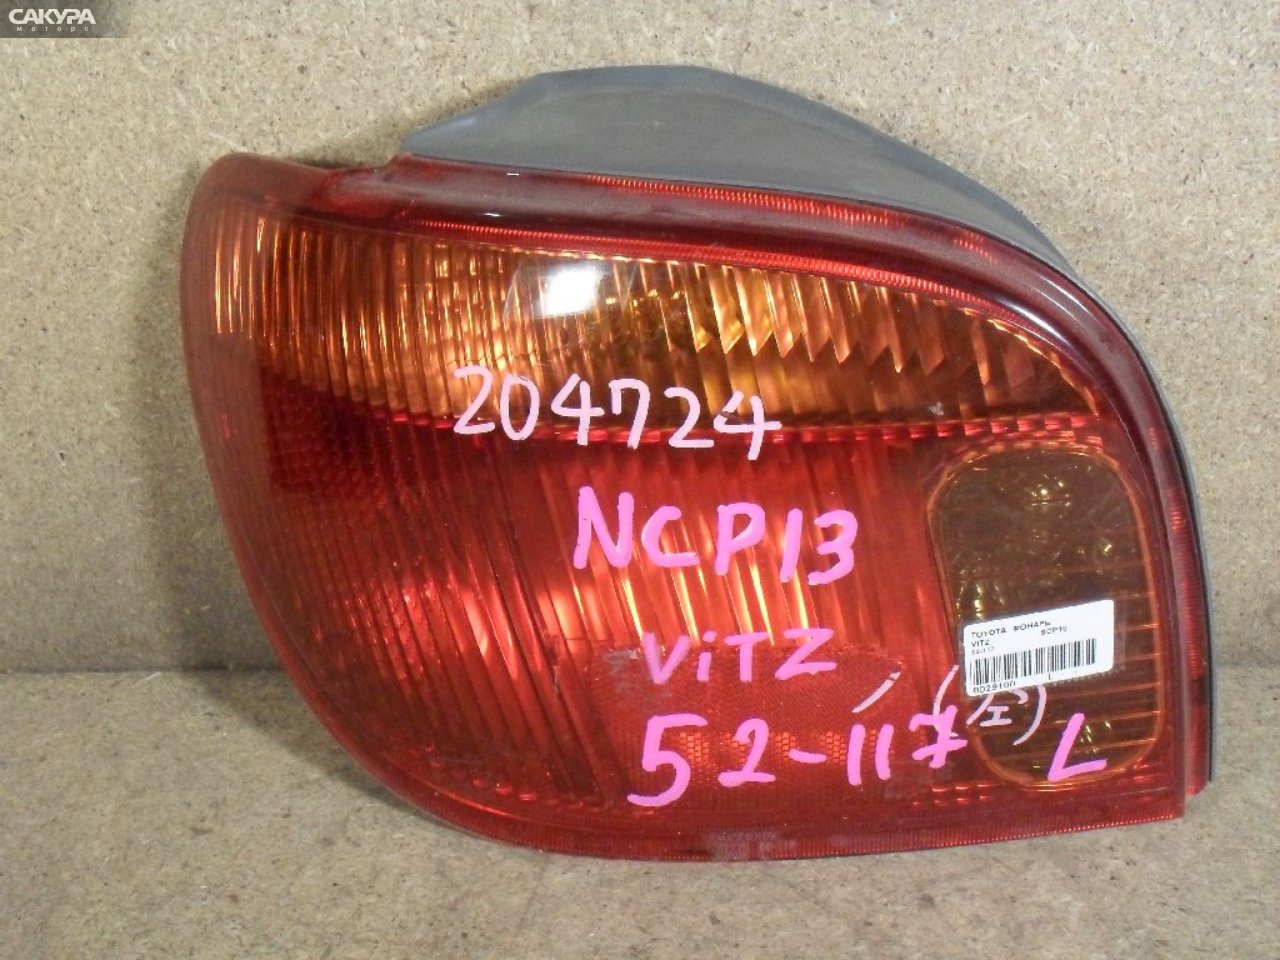 Фонарь стоп-сигнала левый Toyota Vitz SCP10 52-117: купить в Сакура Абакан.